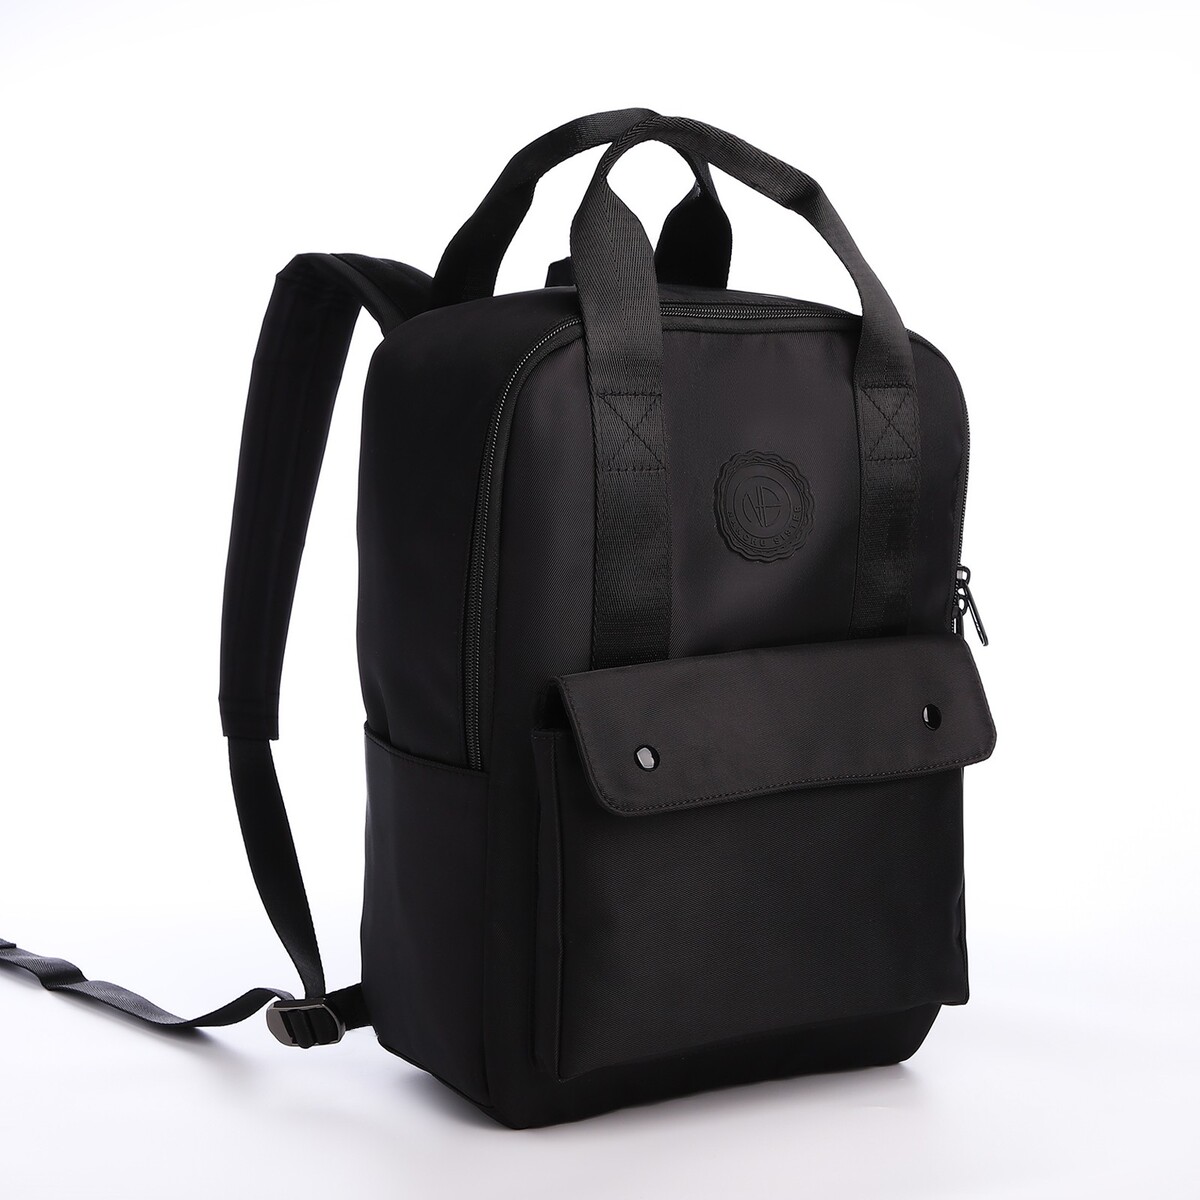 Рюкзак молодежный из текстиля на молнии, отдел для ноутбука, 4 кармана, цвет черный рюкзак для ноутбука 13 3 sumdex pon 266gy